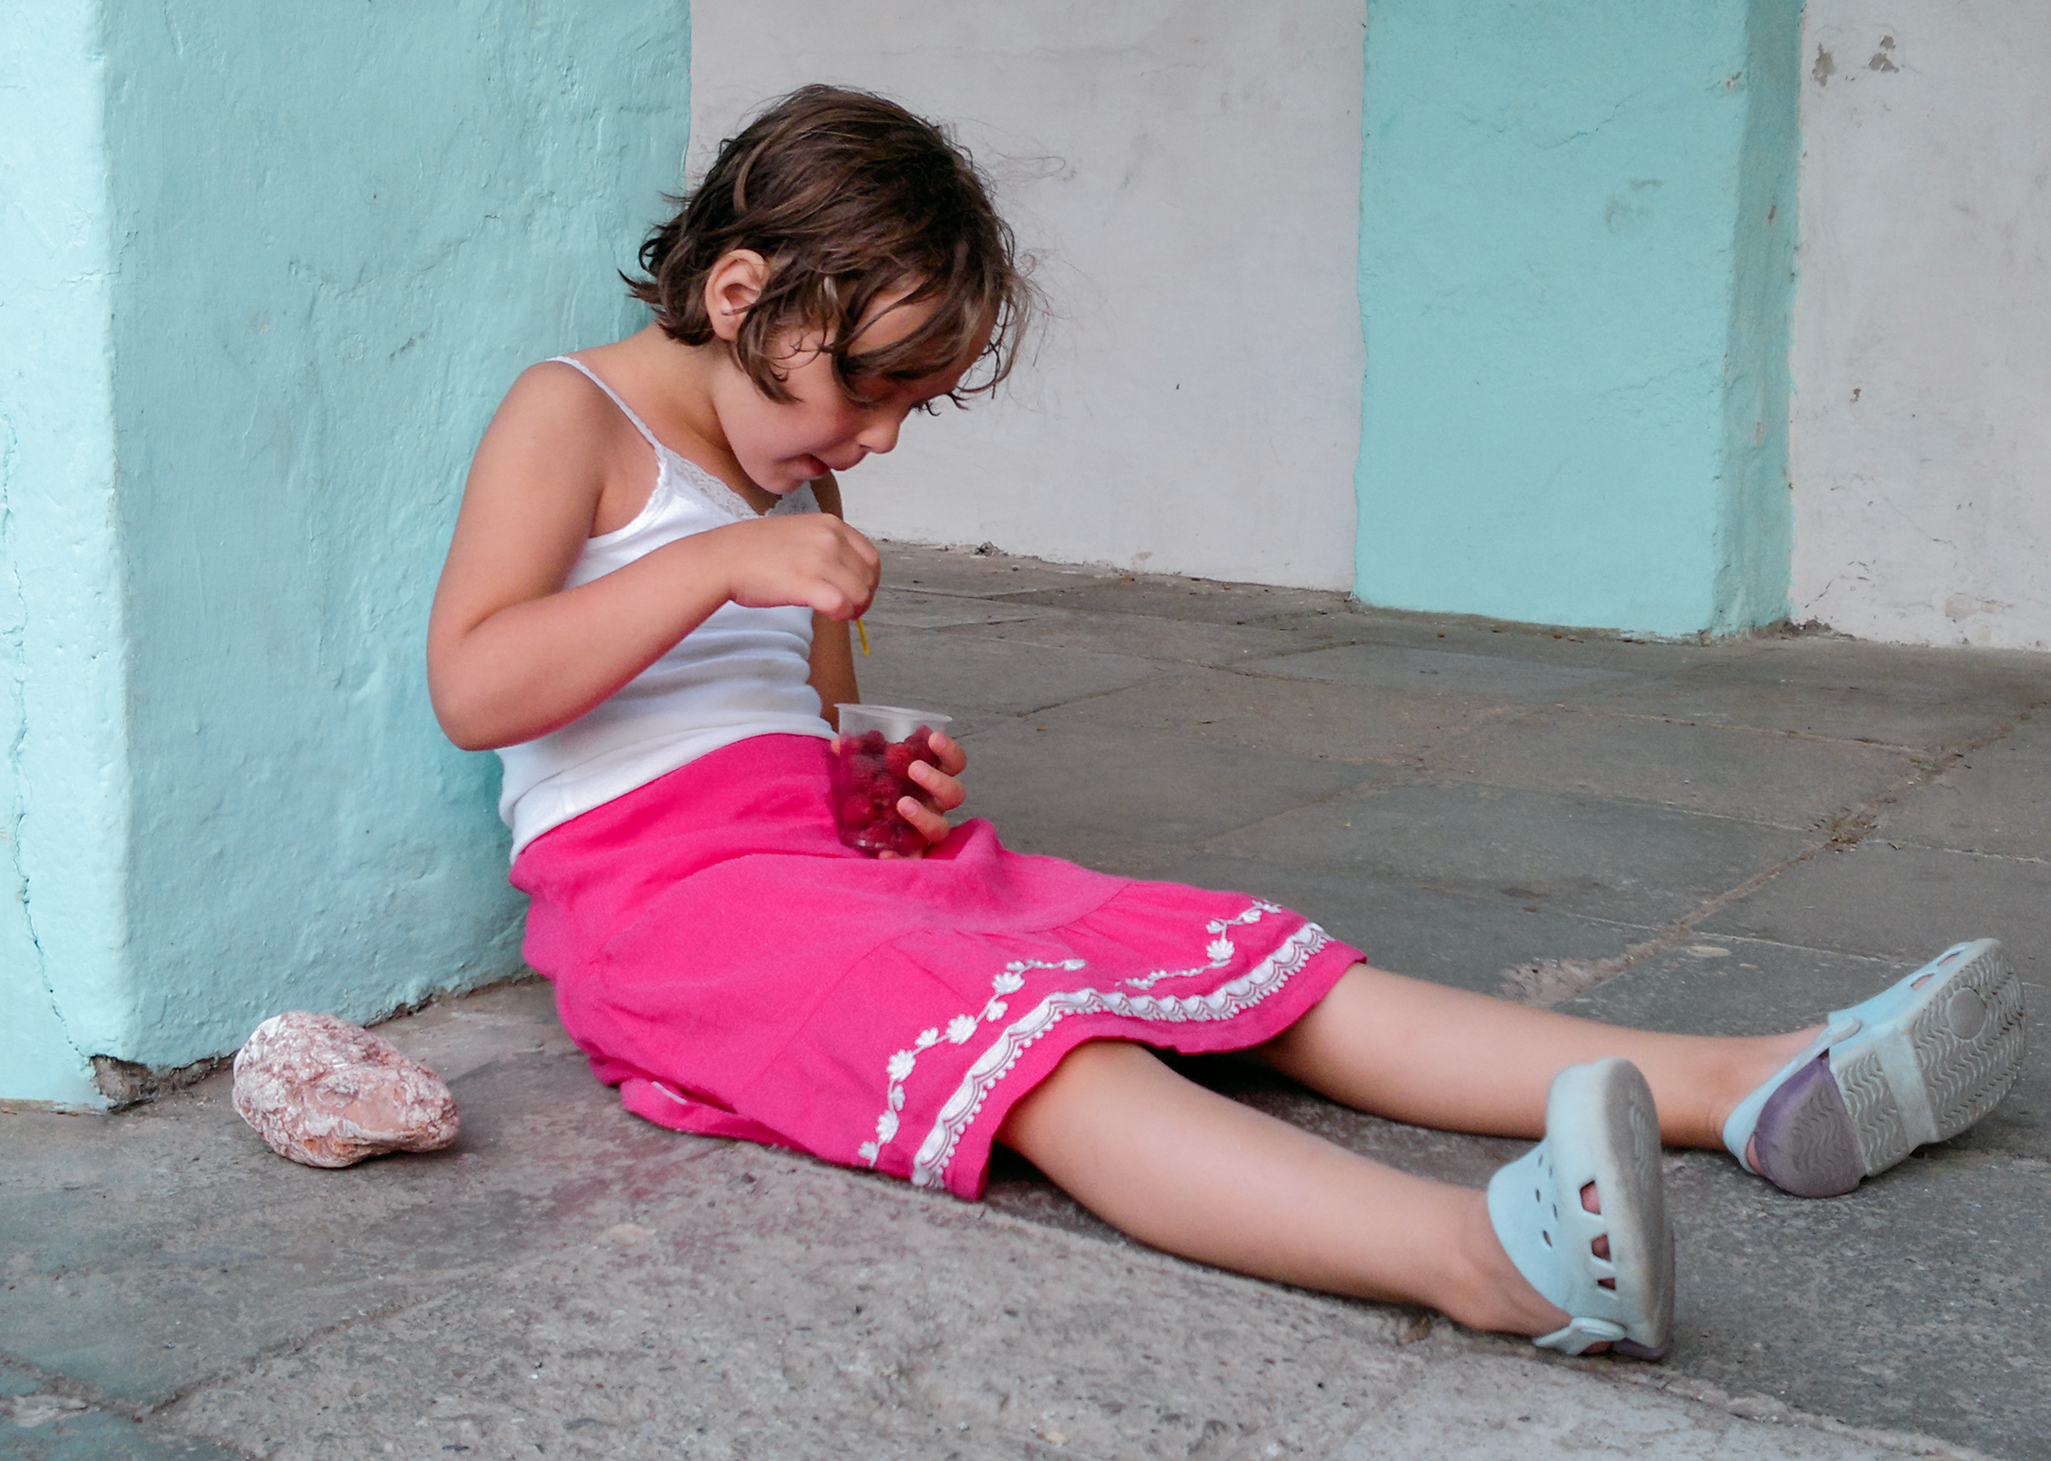 Jente sitter på bakken ved en vegg og spiser bringebær